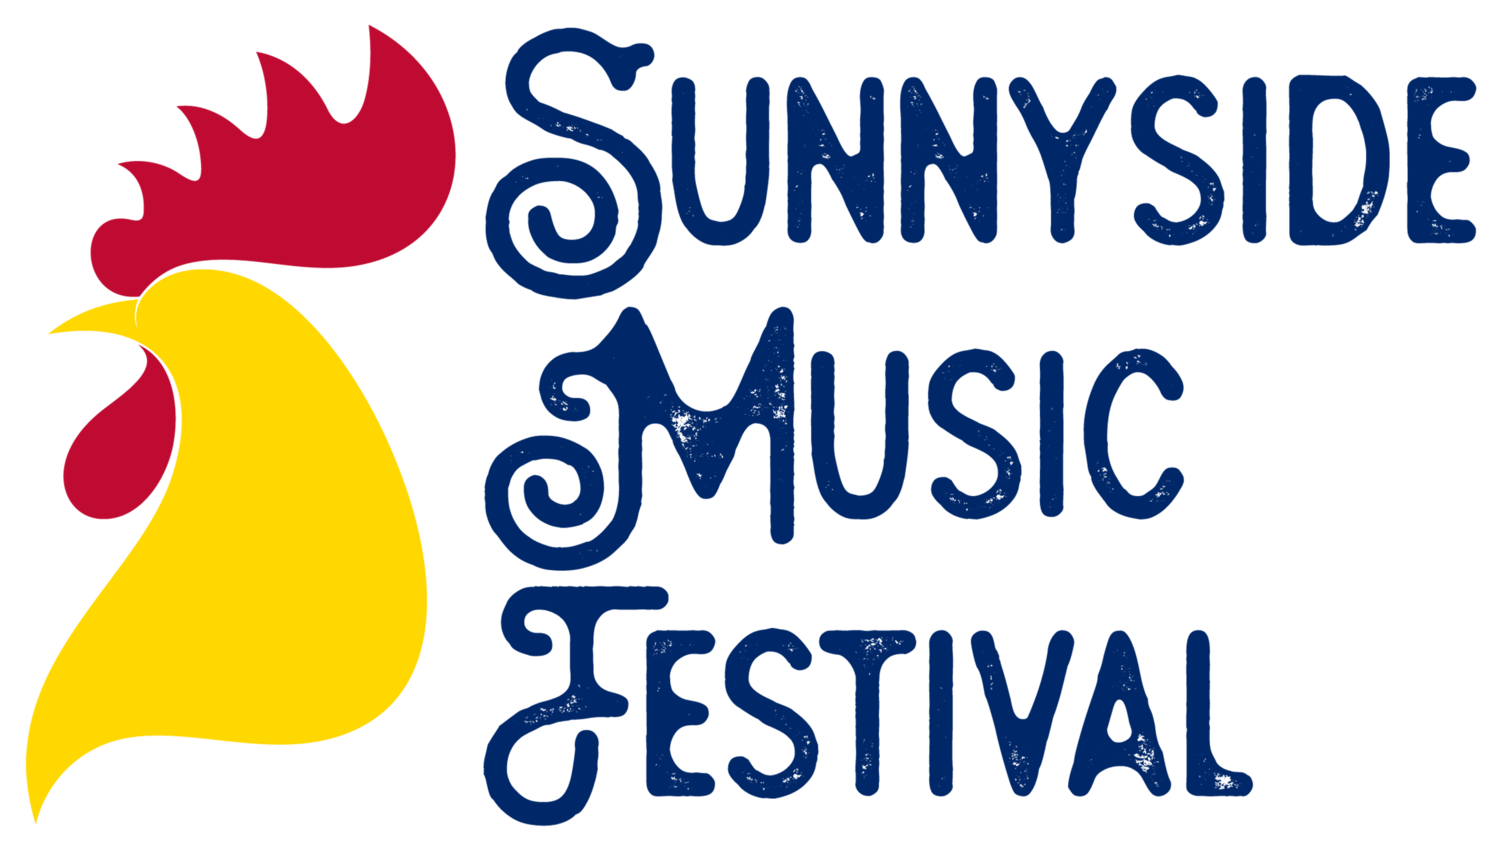 Sunnyside Music Festival